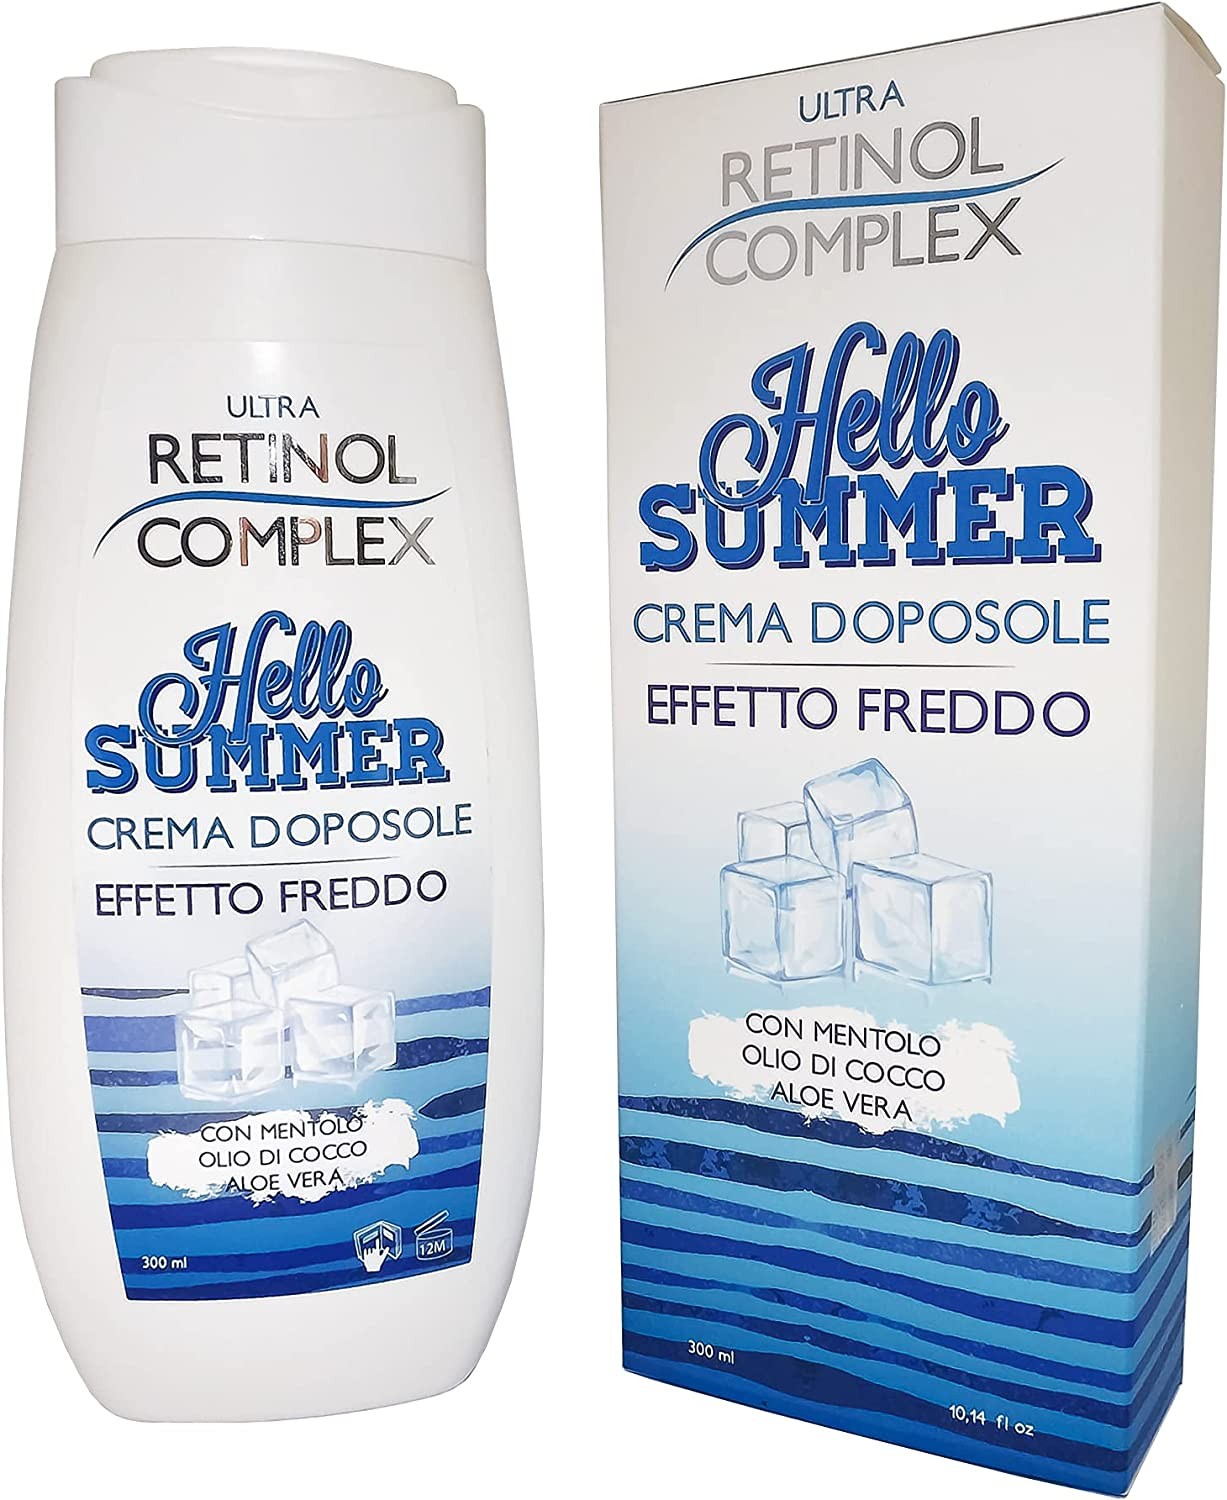 Retinol Complex Hllo Summer Crema Doposole"EFFETTO FREDDO" | 300ml Con Mentolo Olio di cocco Aloe Vera